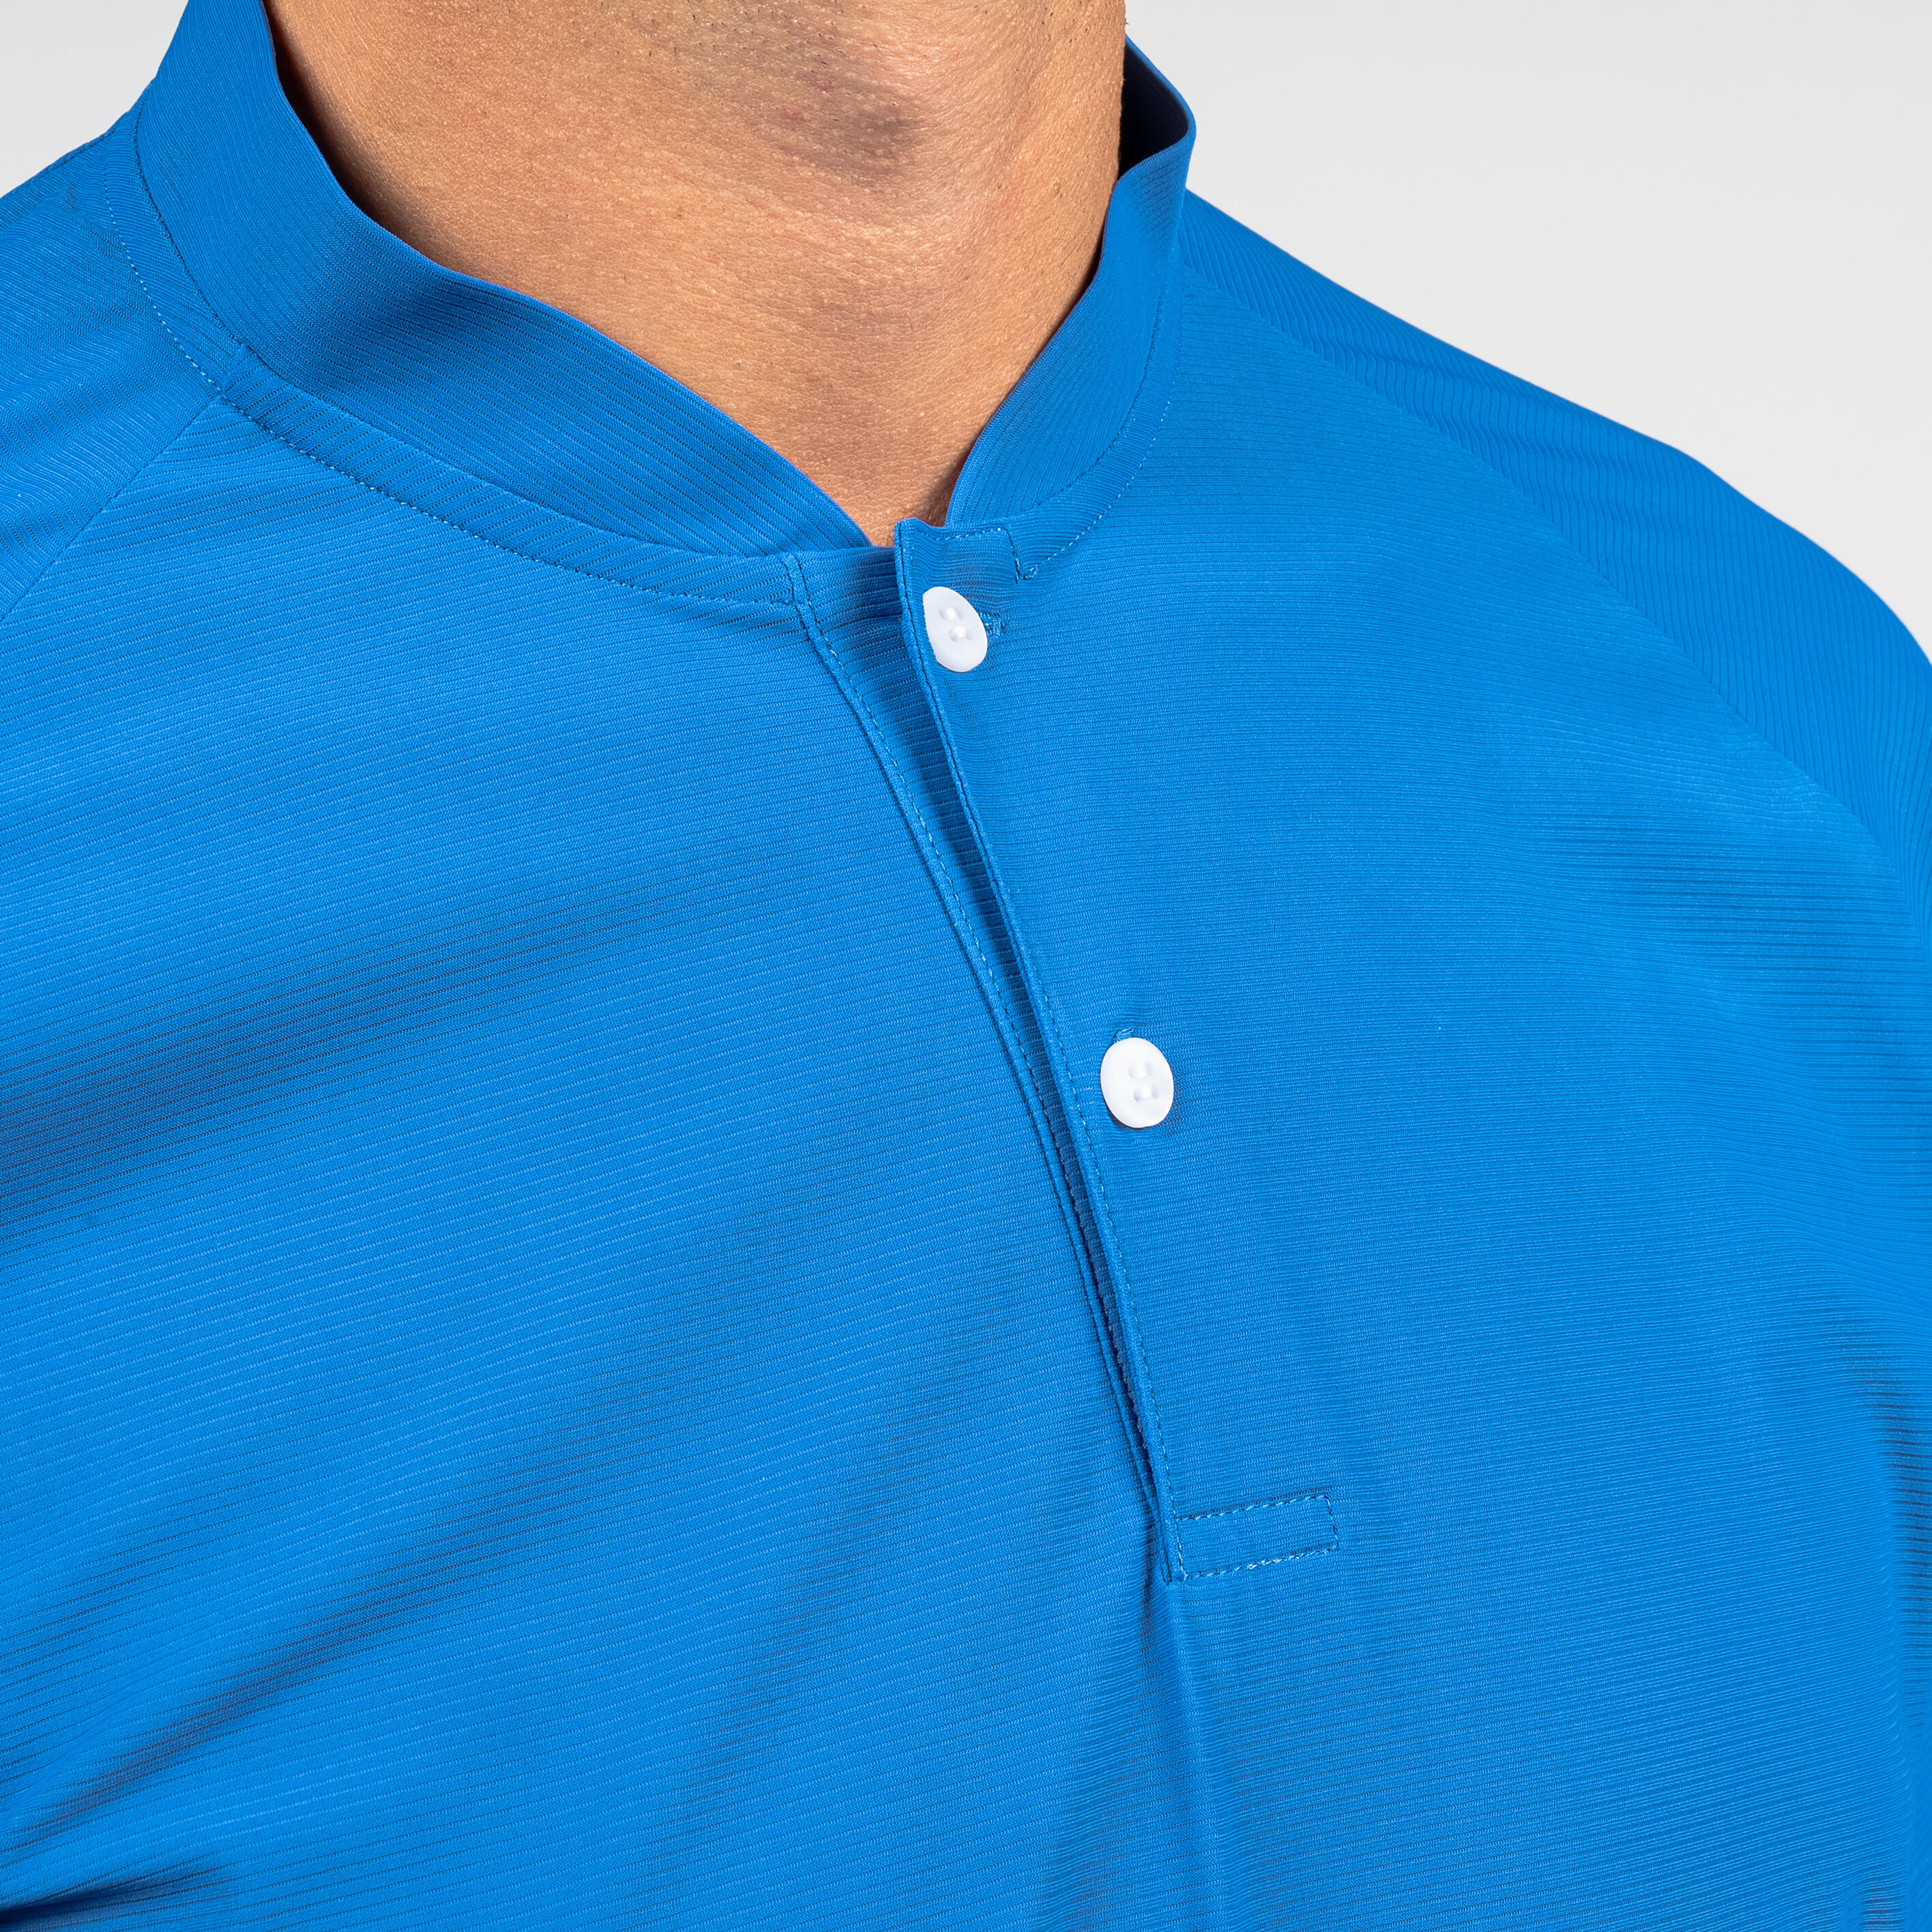 Men's golf short sleeve polo shirt - WW500 blue 5/8